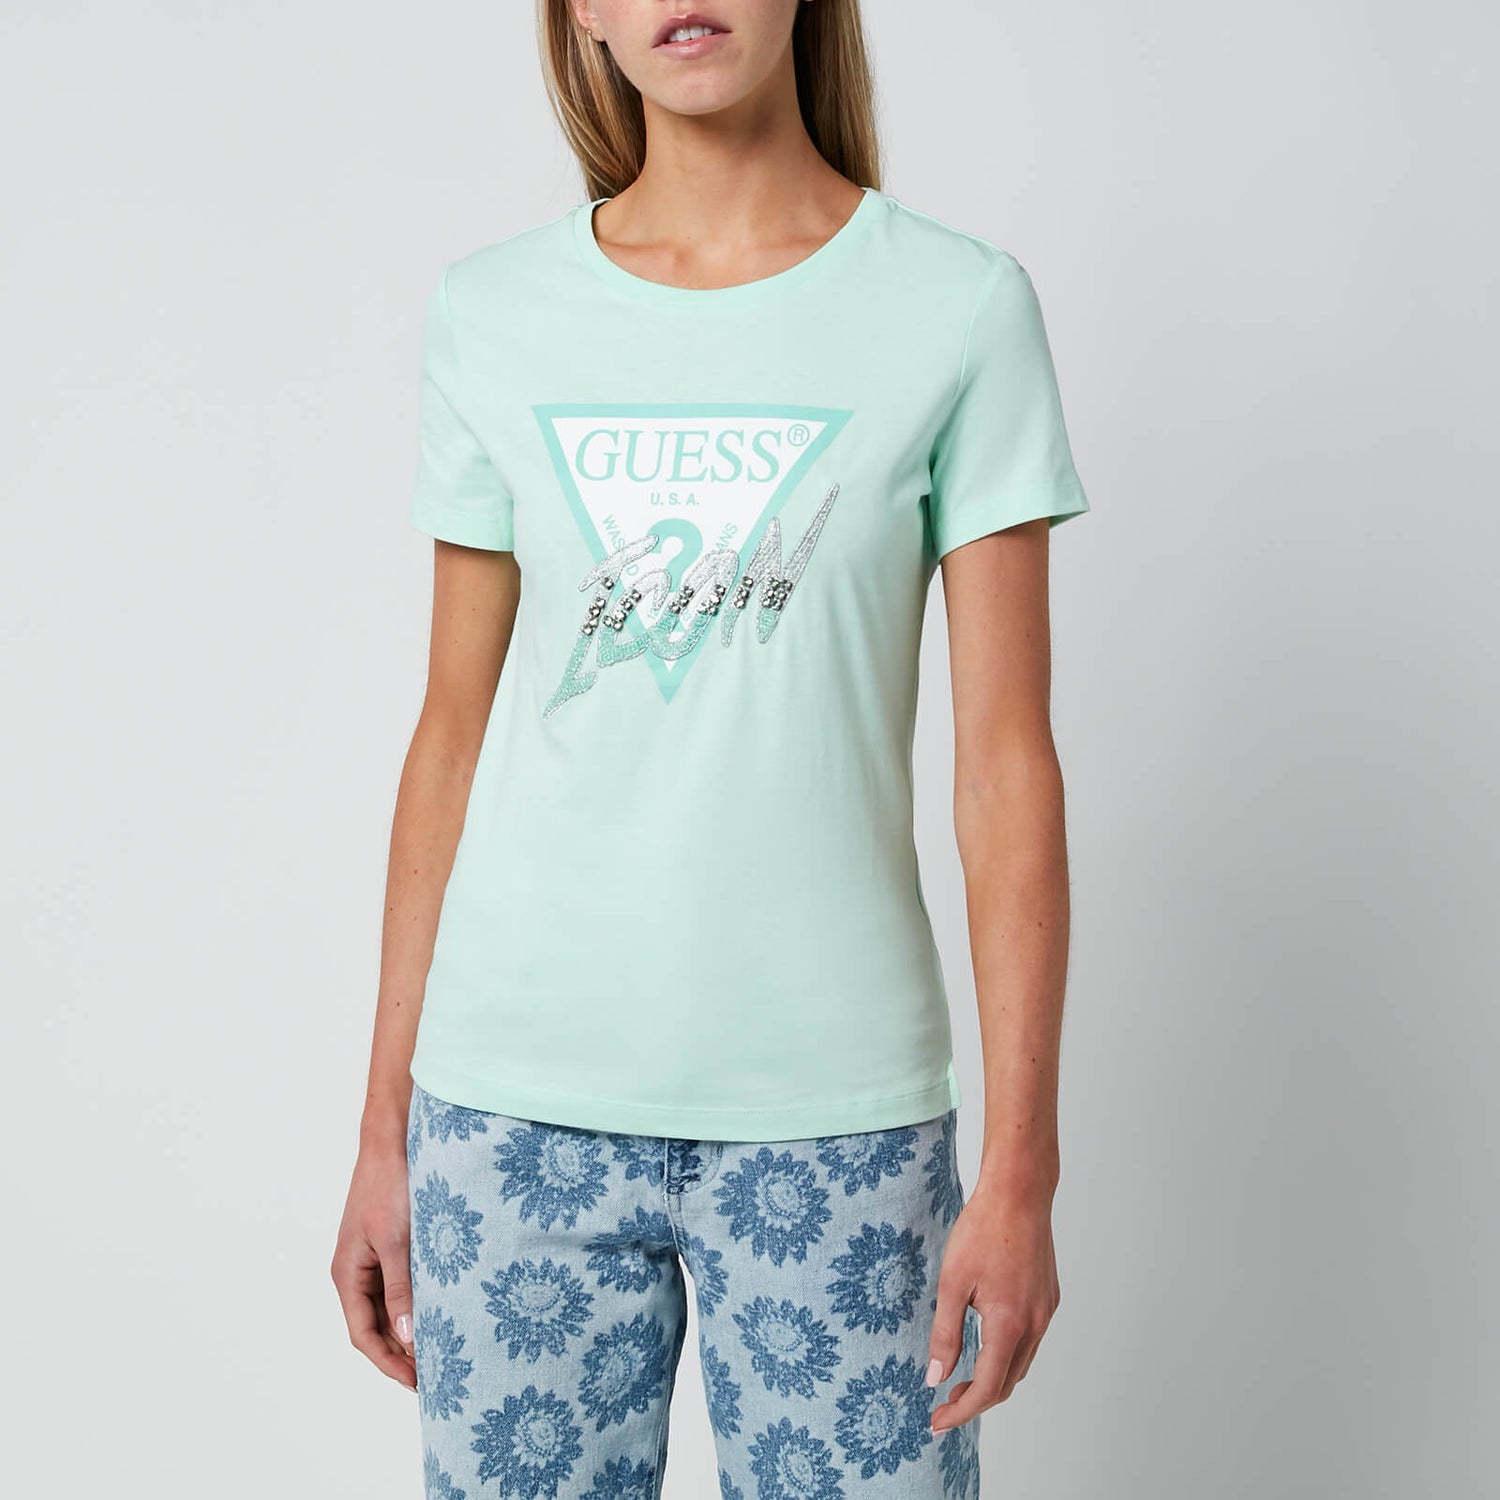 Guess Women's Short Sleeve Crewneck Icon T-Shirt - Aqua Breeze